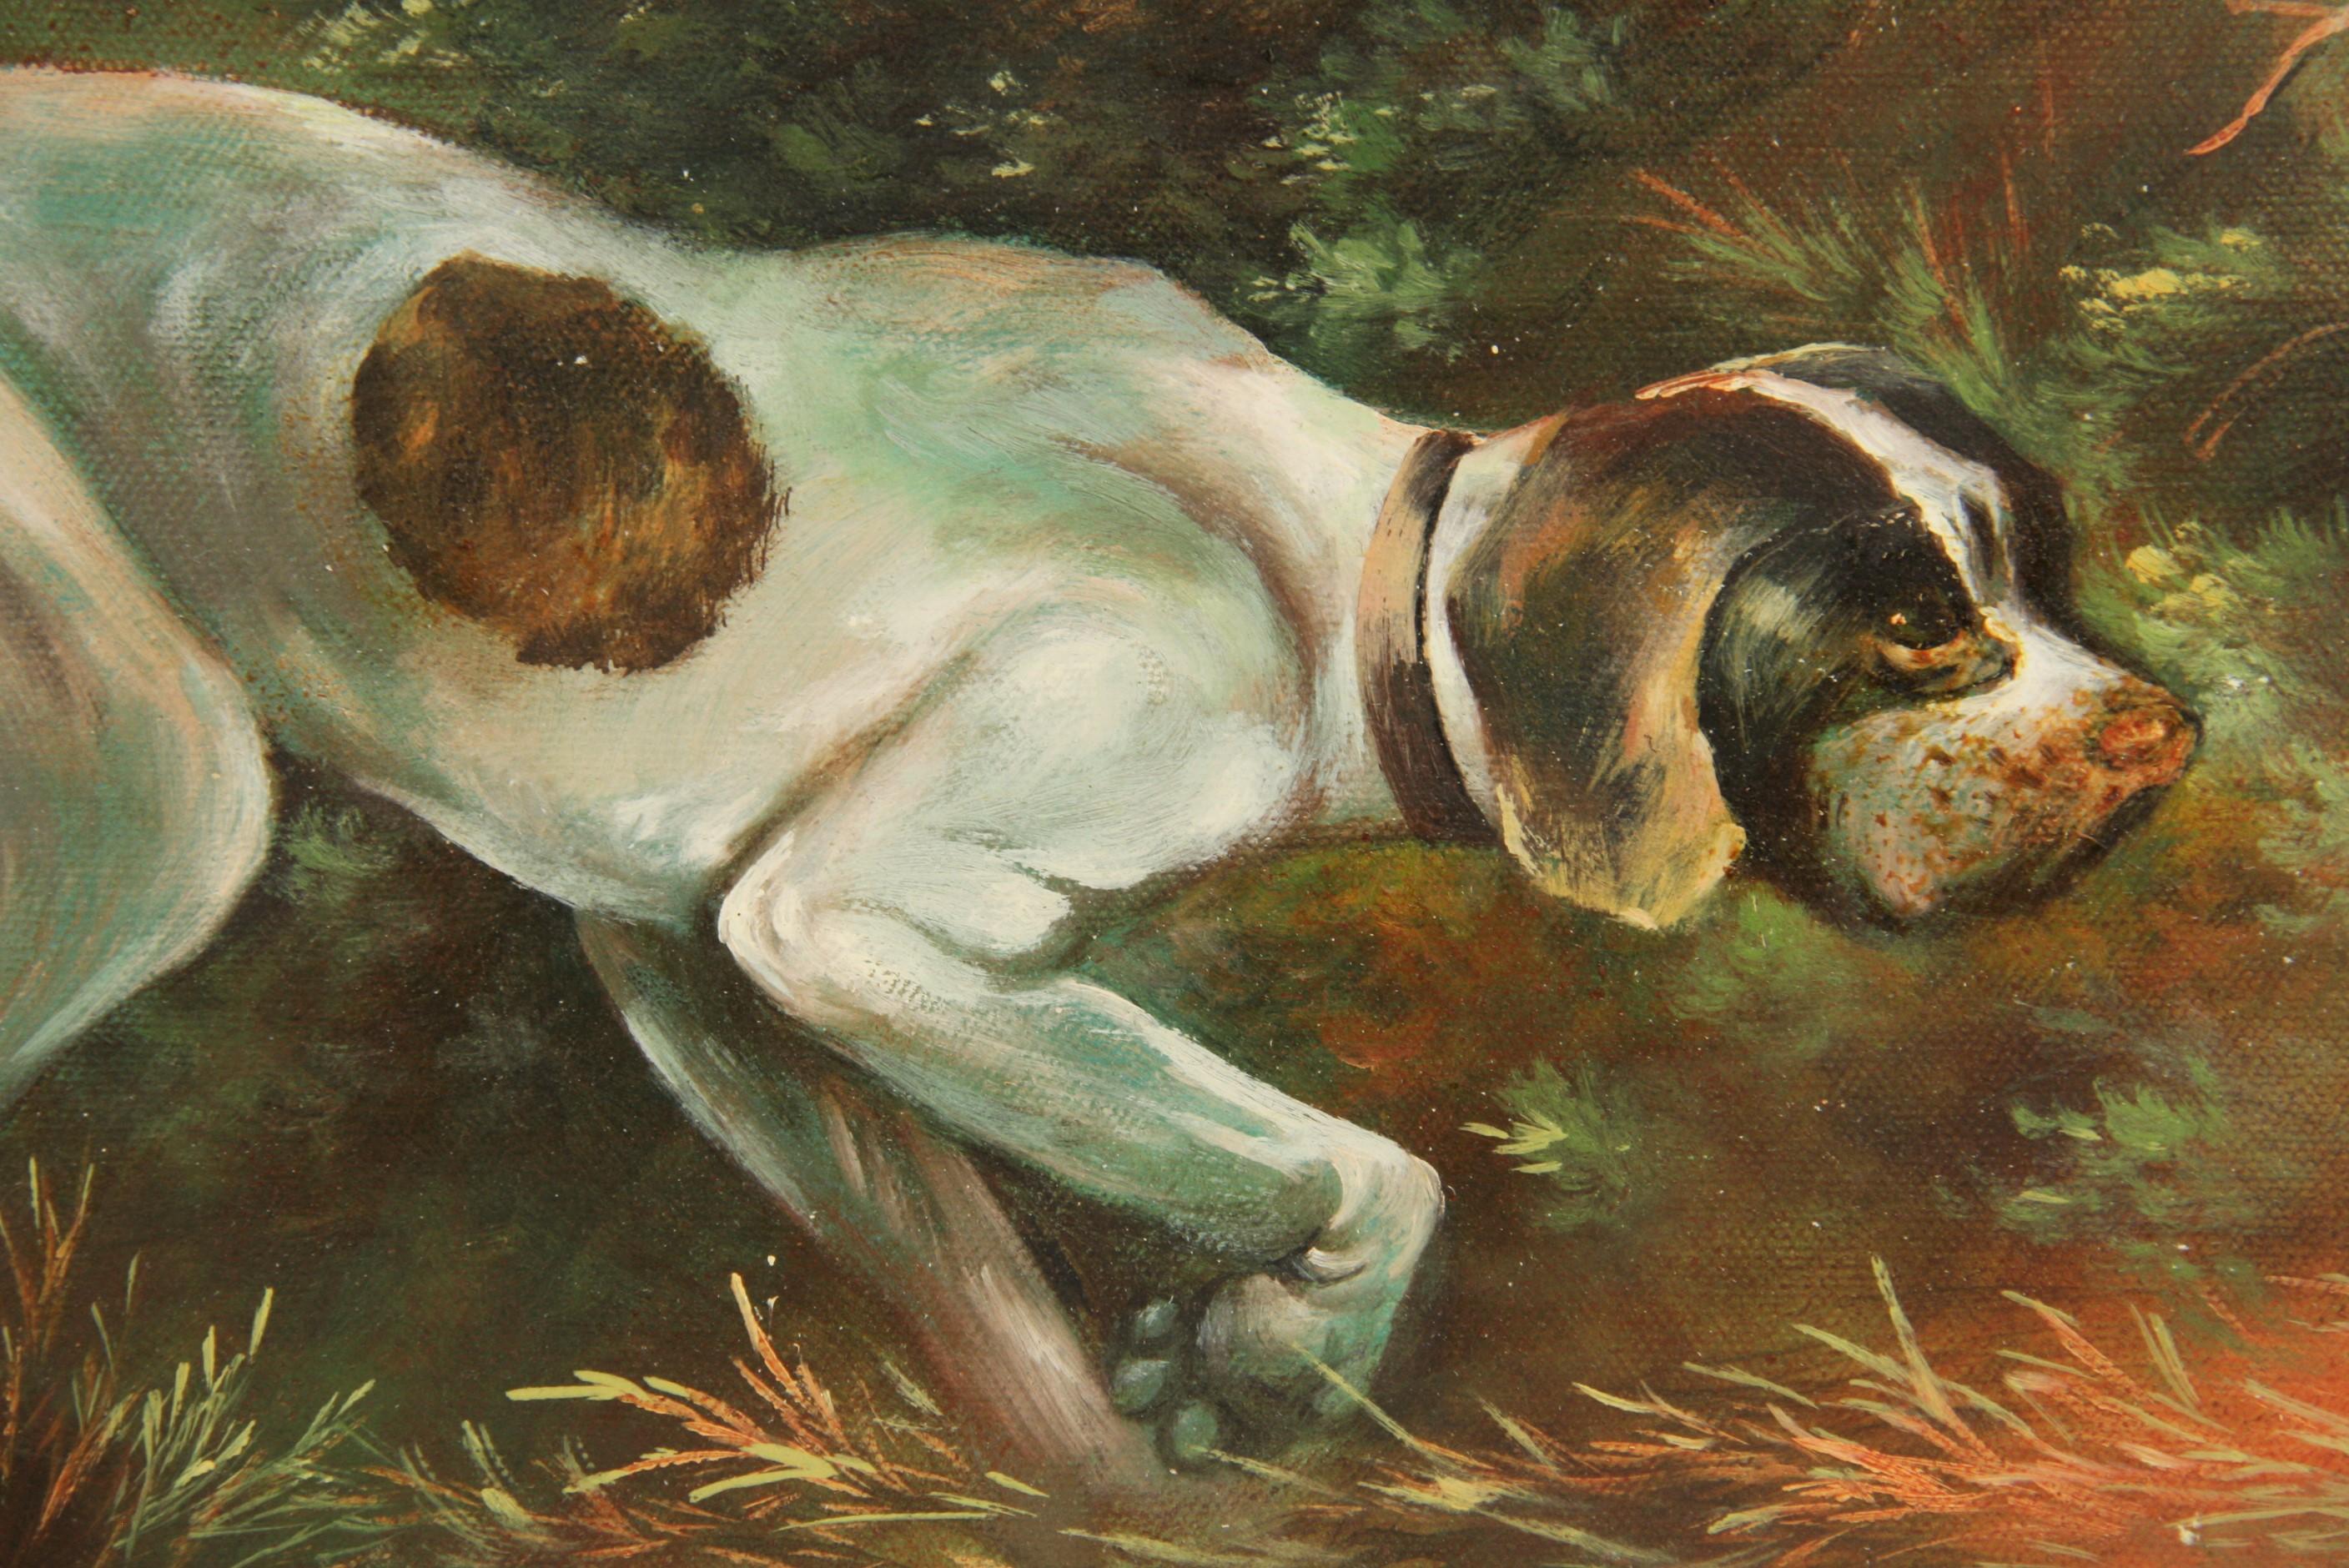 #5-3302 Chasse au chien huile sur toile appliquée sur un panneau, présentée dans un cadre en bois, signée par Geyer.
Taille de l'image 10,25 H x 13,50 L